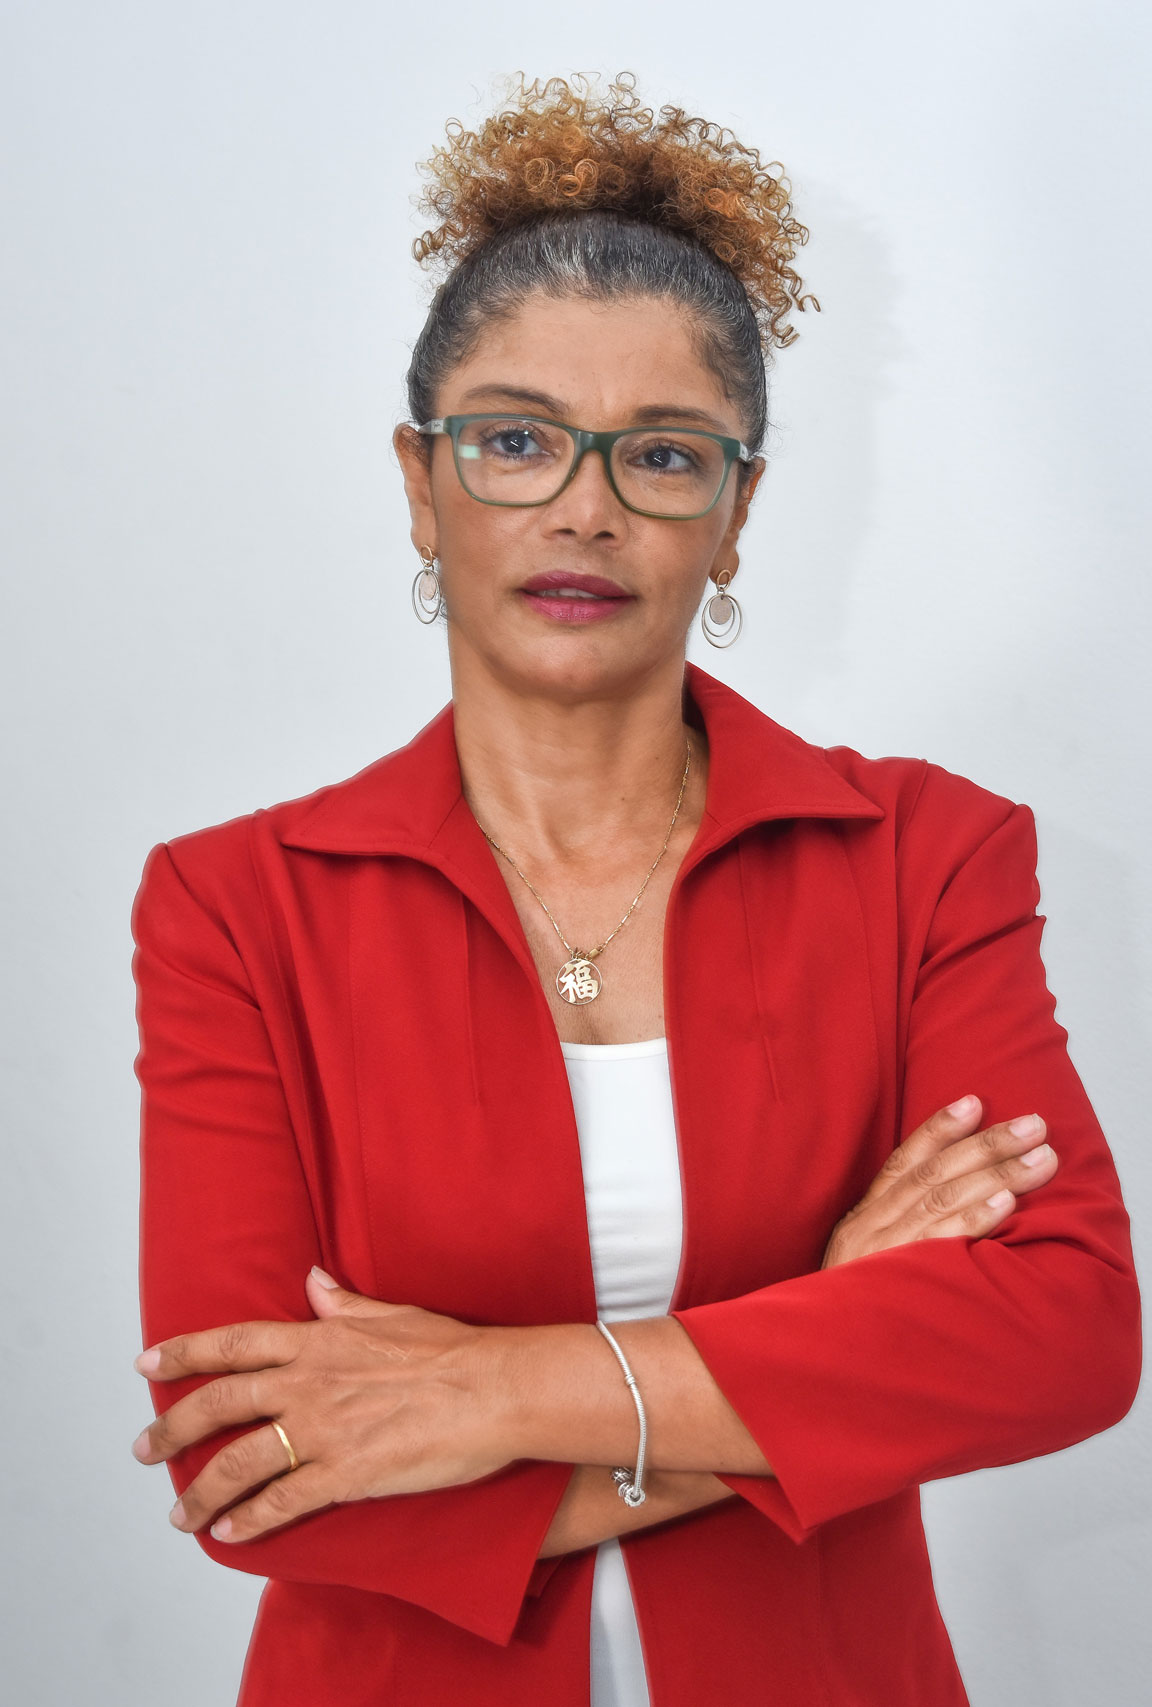 Candidata de Cabo Verde eleita para o Board of Directors da iSMA